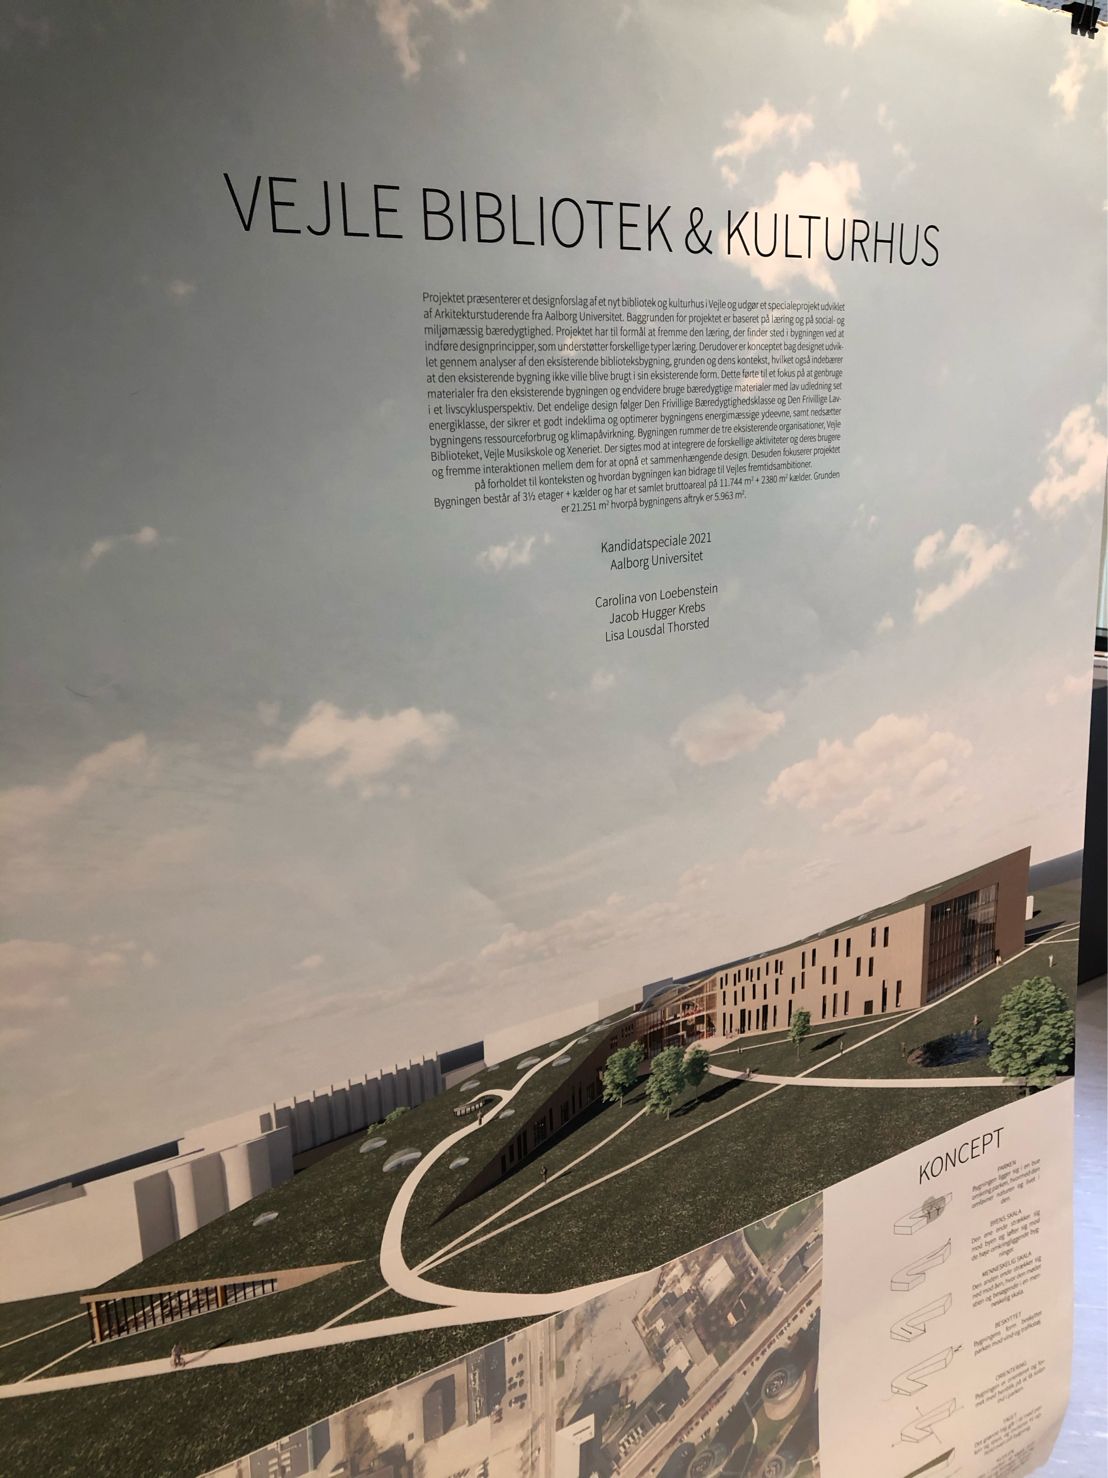 Fotos fra udstilling med designforslag til nyt kulturhus og bibliotek i Vejle